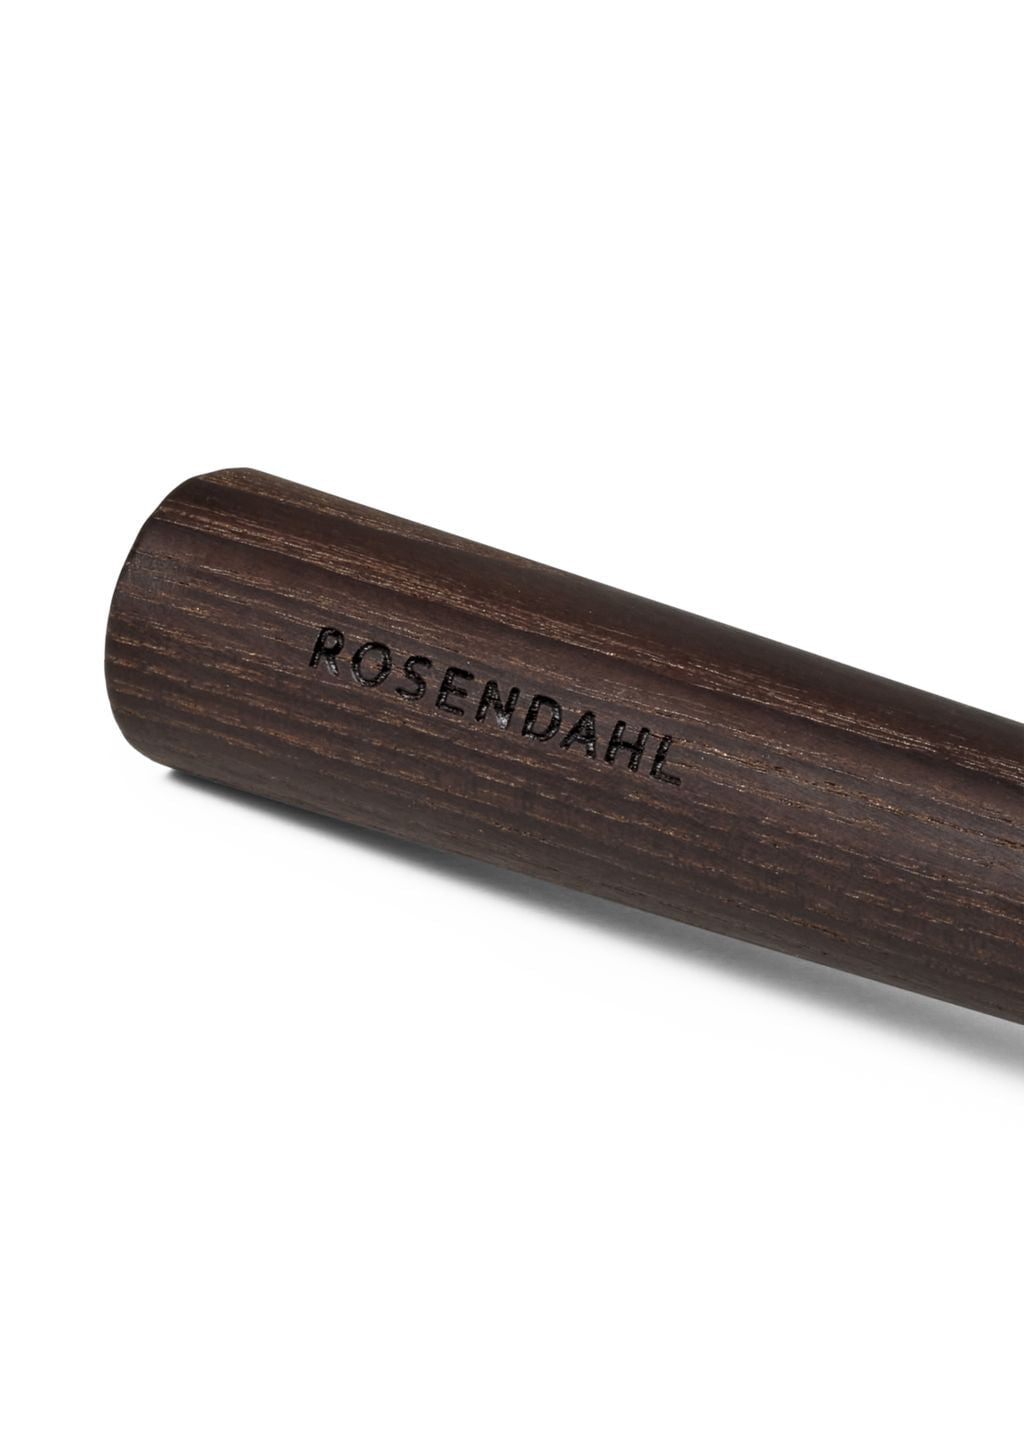 Rosendahl Rå whisk, thermo as/pistool metallic